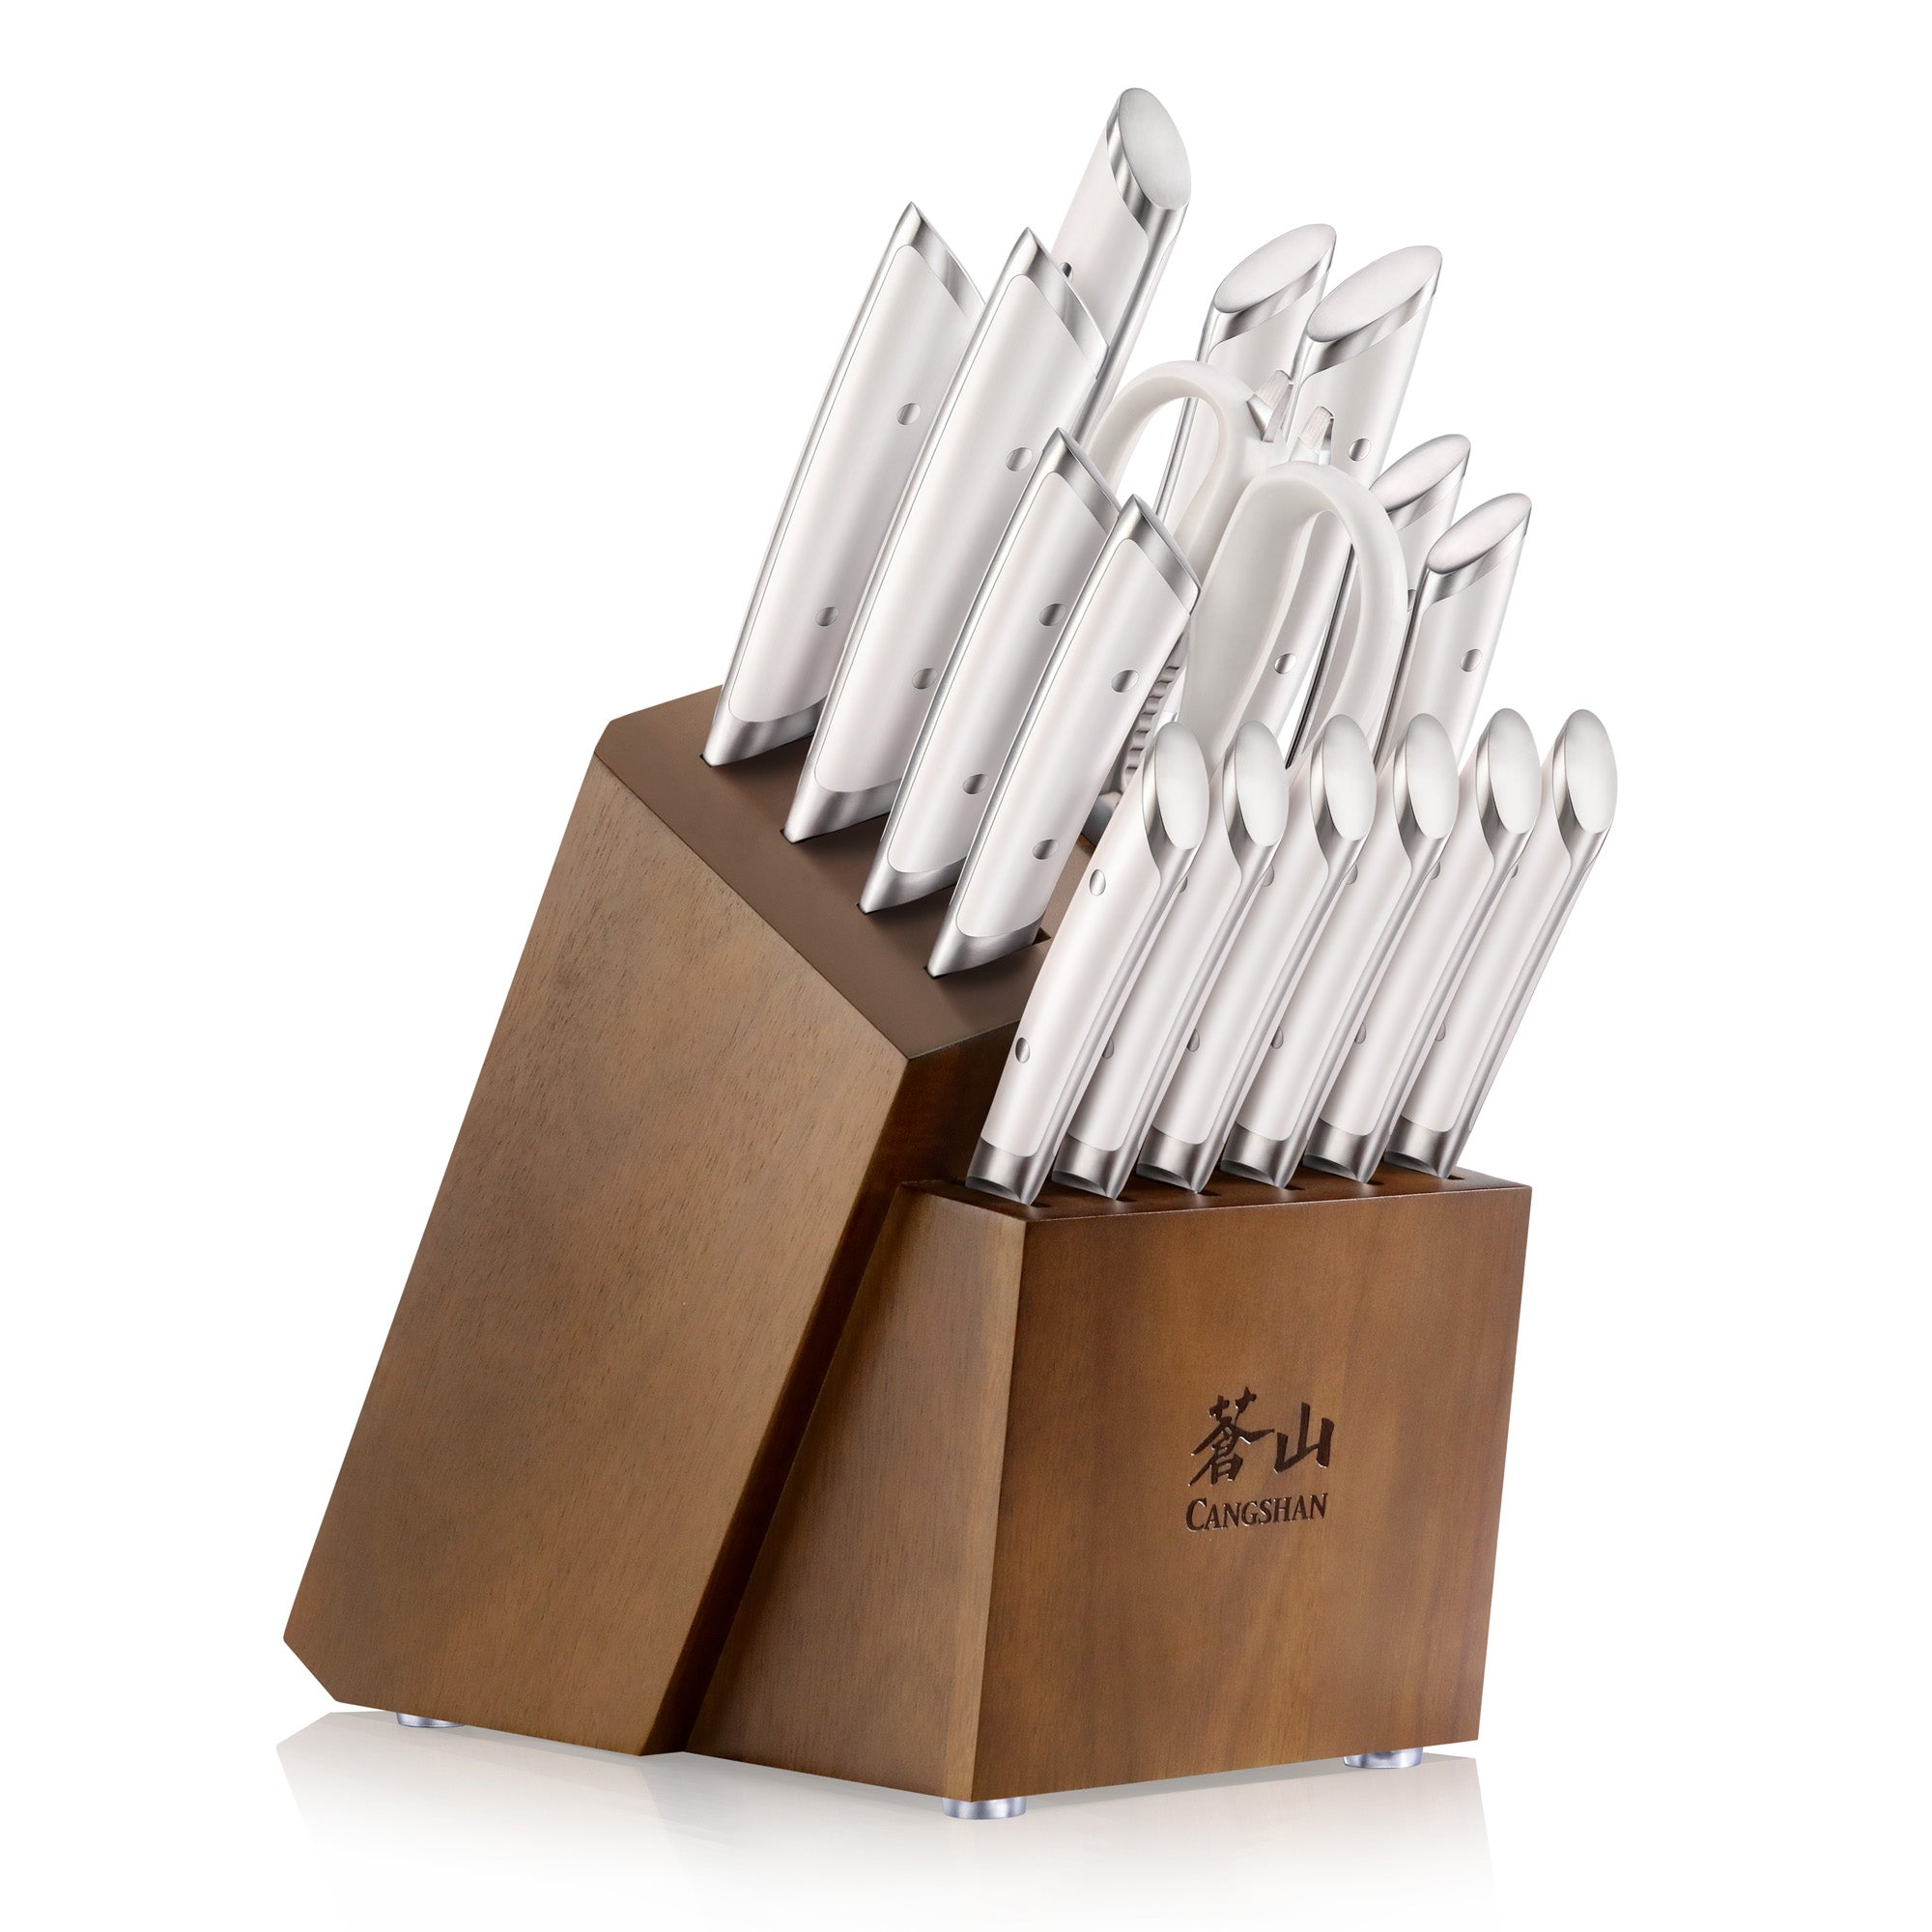 Cangshan HELENA Series German Steel 17-piece Knife Block Set, White